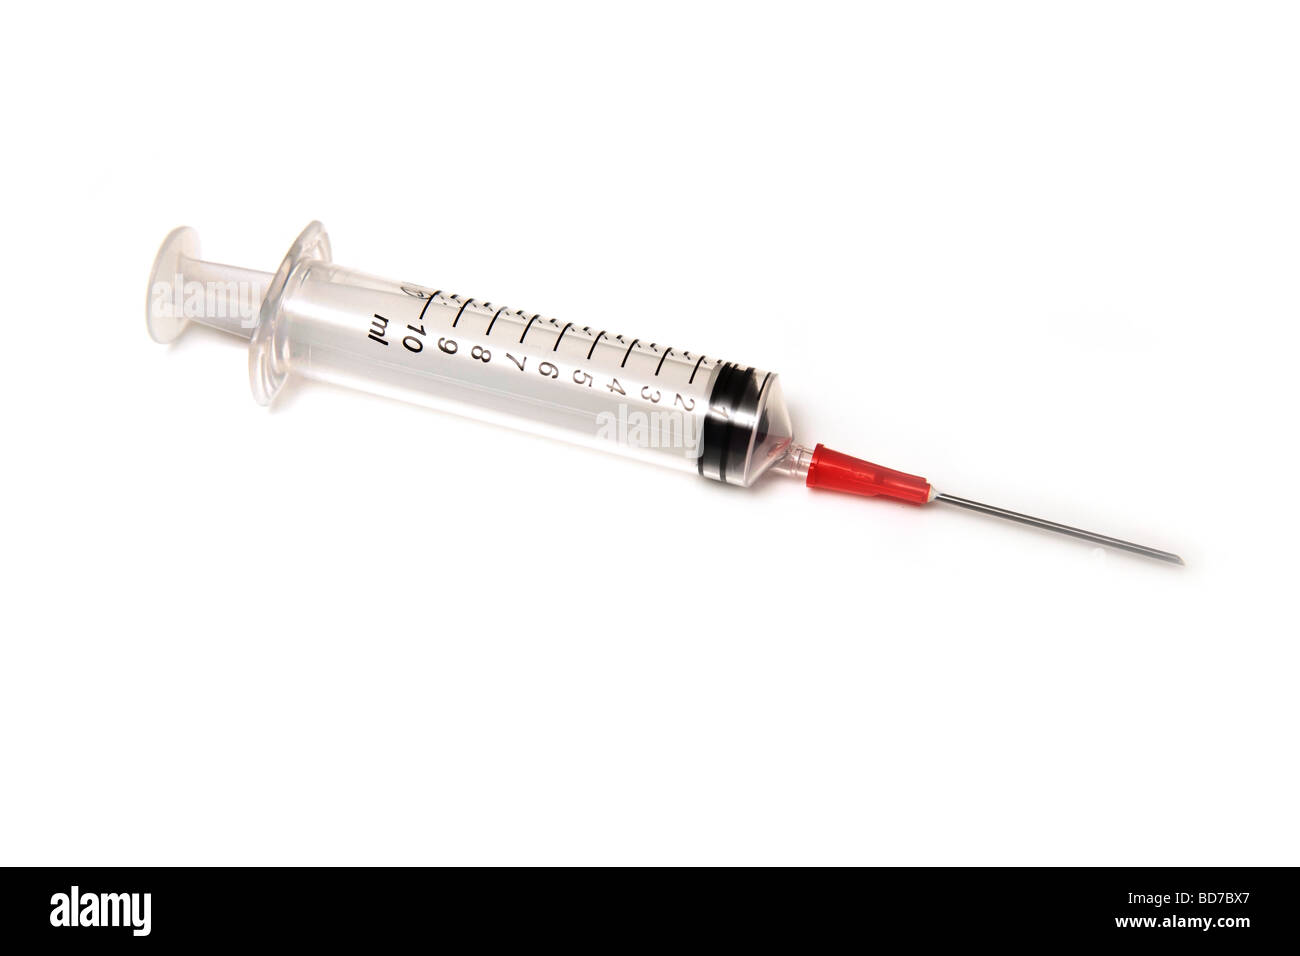 Empty syringe isolated on a white studio background Stock Photo